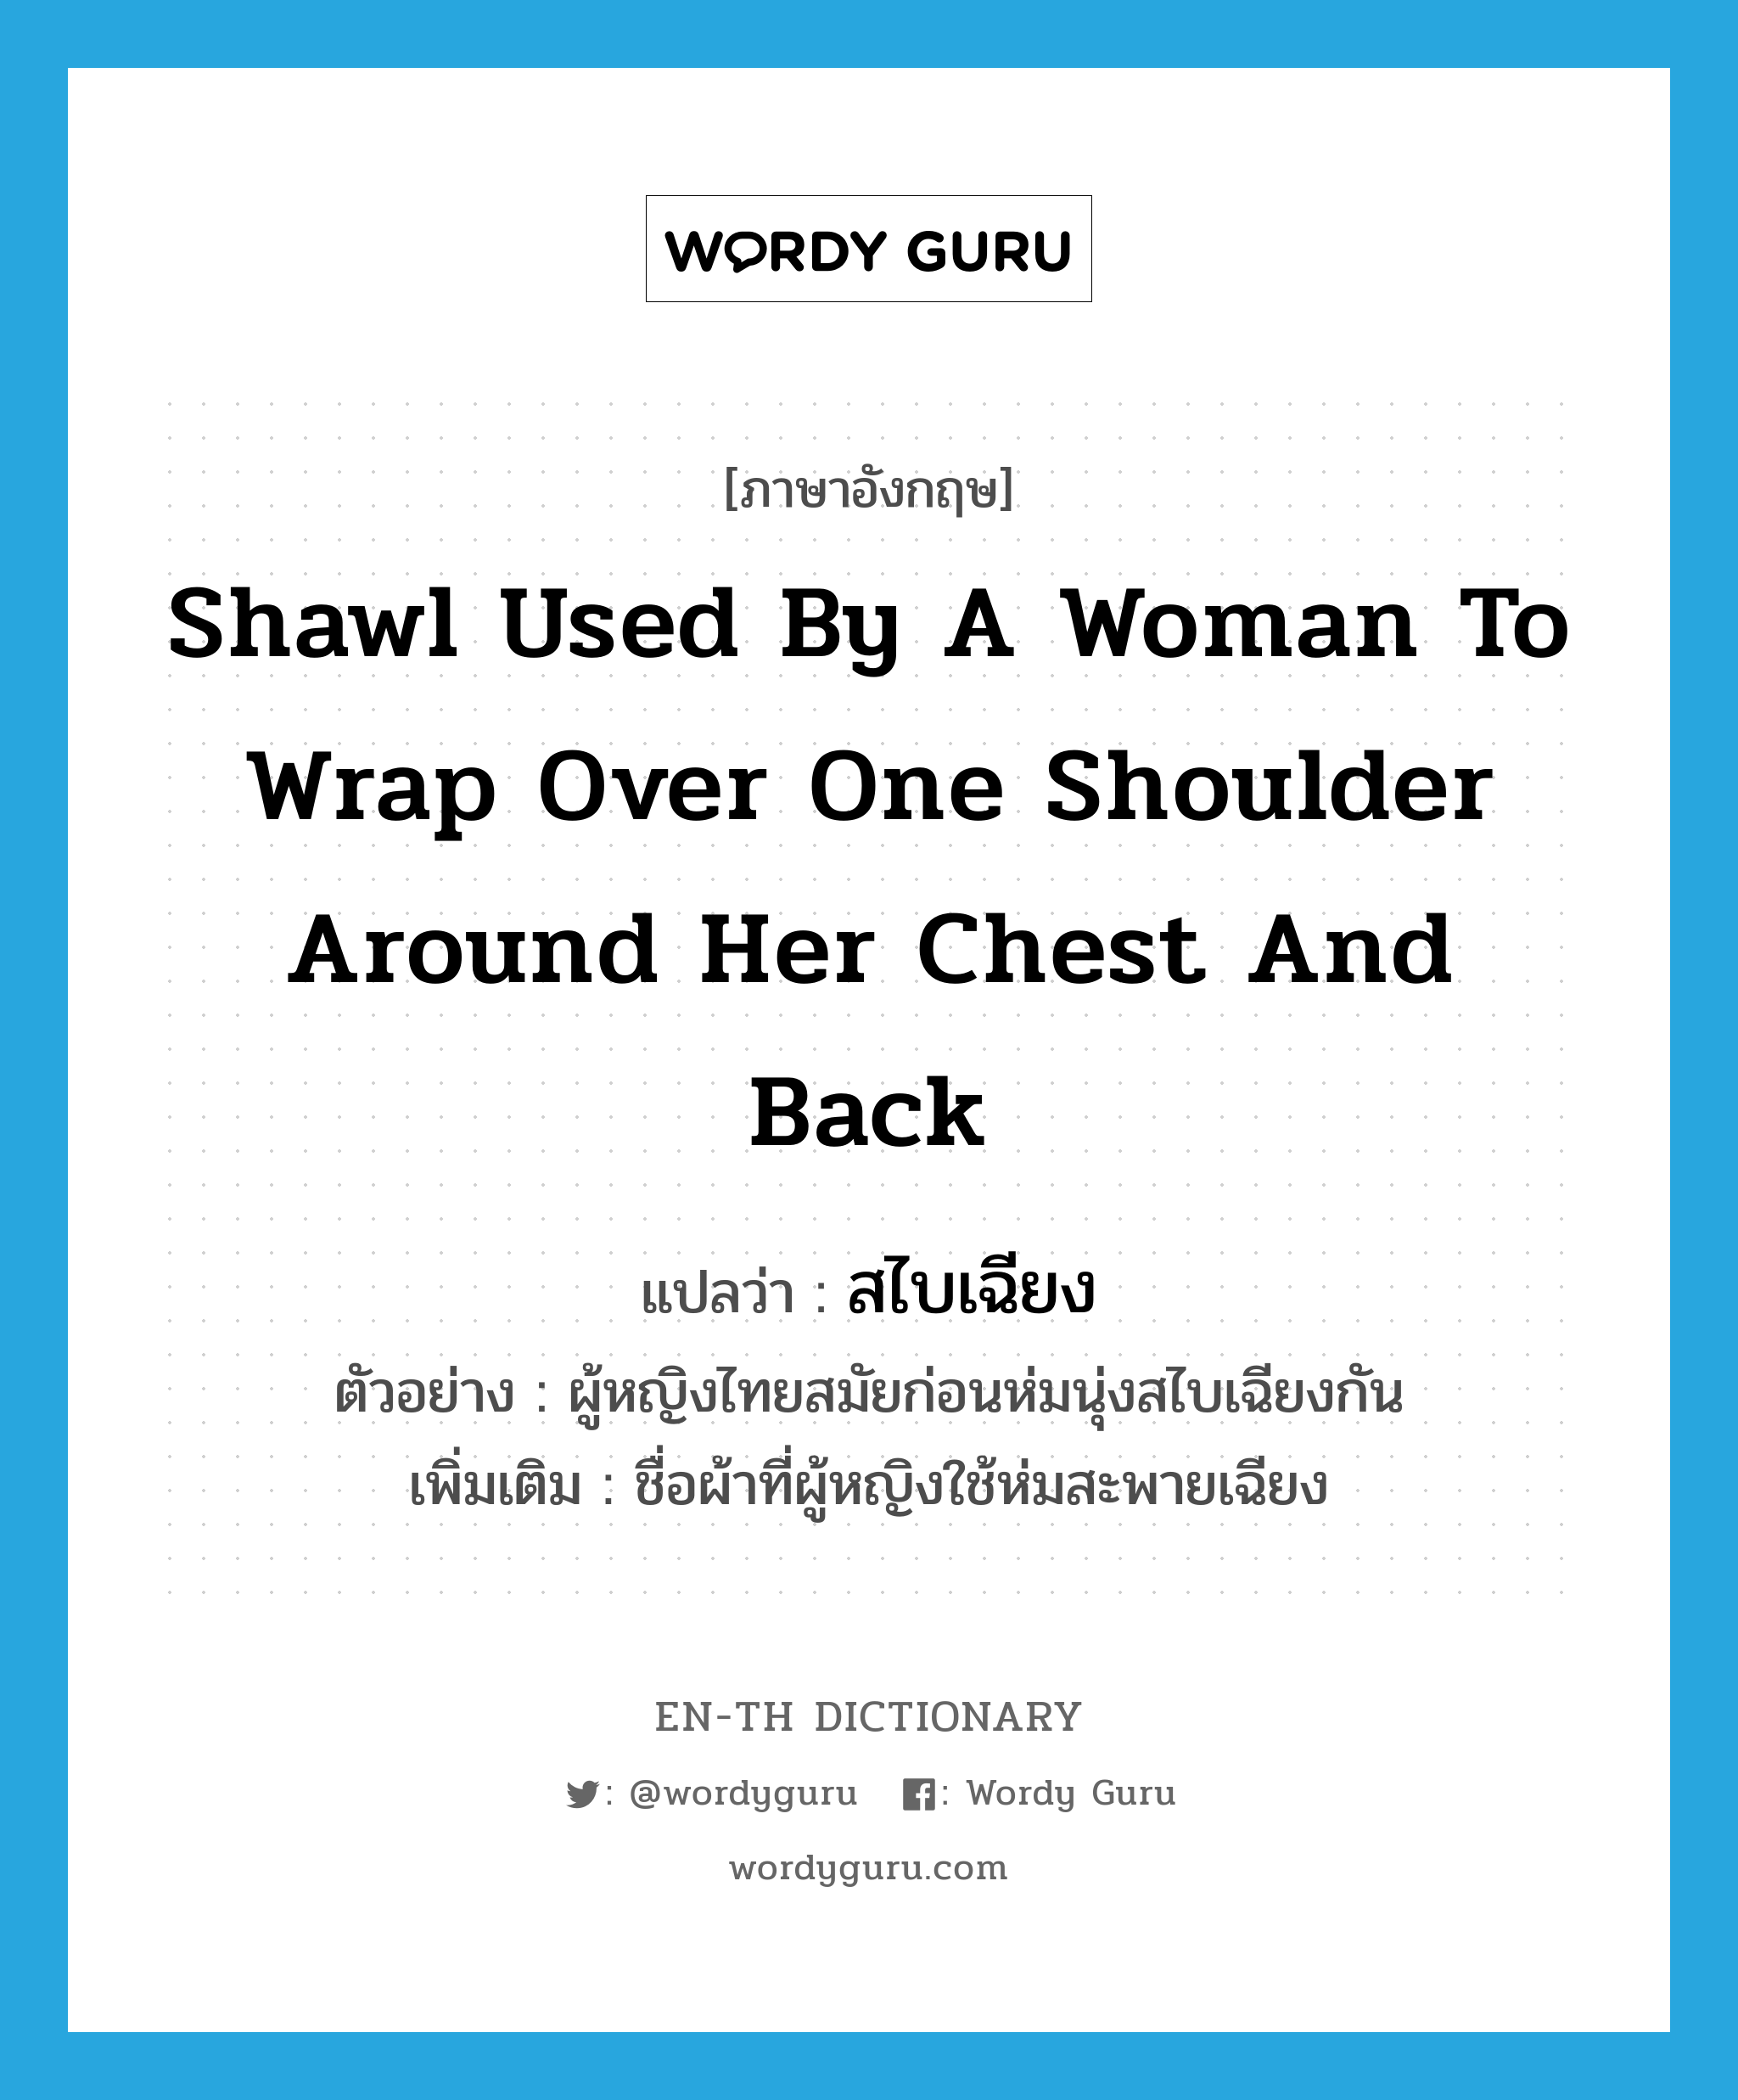 สไบเฉียง ภาษาอังกฤษ?, คำศัพท์ภาษาอังกฤษ สไบเฉียง แปลว่า shawl used by a woman to wrap over one shoulder around her chest and back ประเภท N ตัวอย่าง ผู้หญิงไทยสมัยก่อนห่มนุ่งสไบเฉียงกัน เพิ่มเติม ชื่อผ้าที่ผู้หญิงใช้ห่มสะพายเฉียง หมวด N